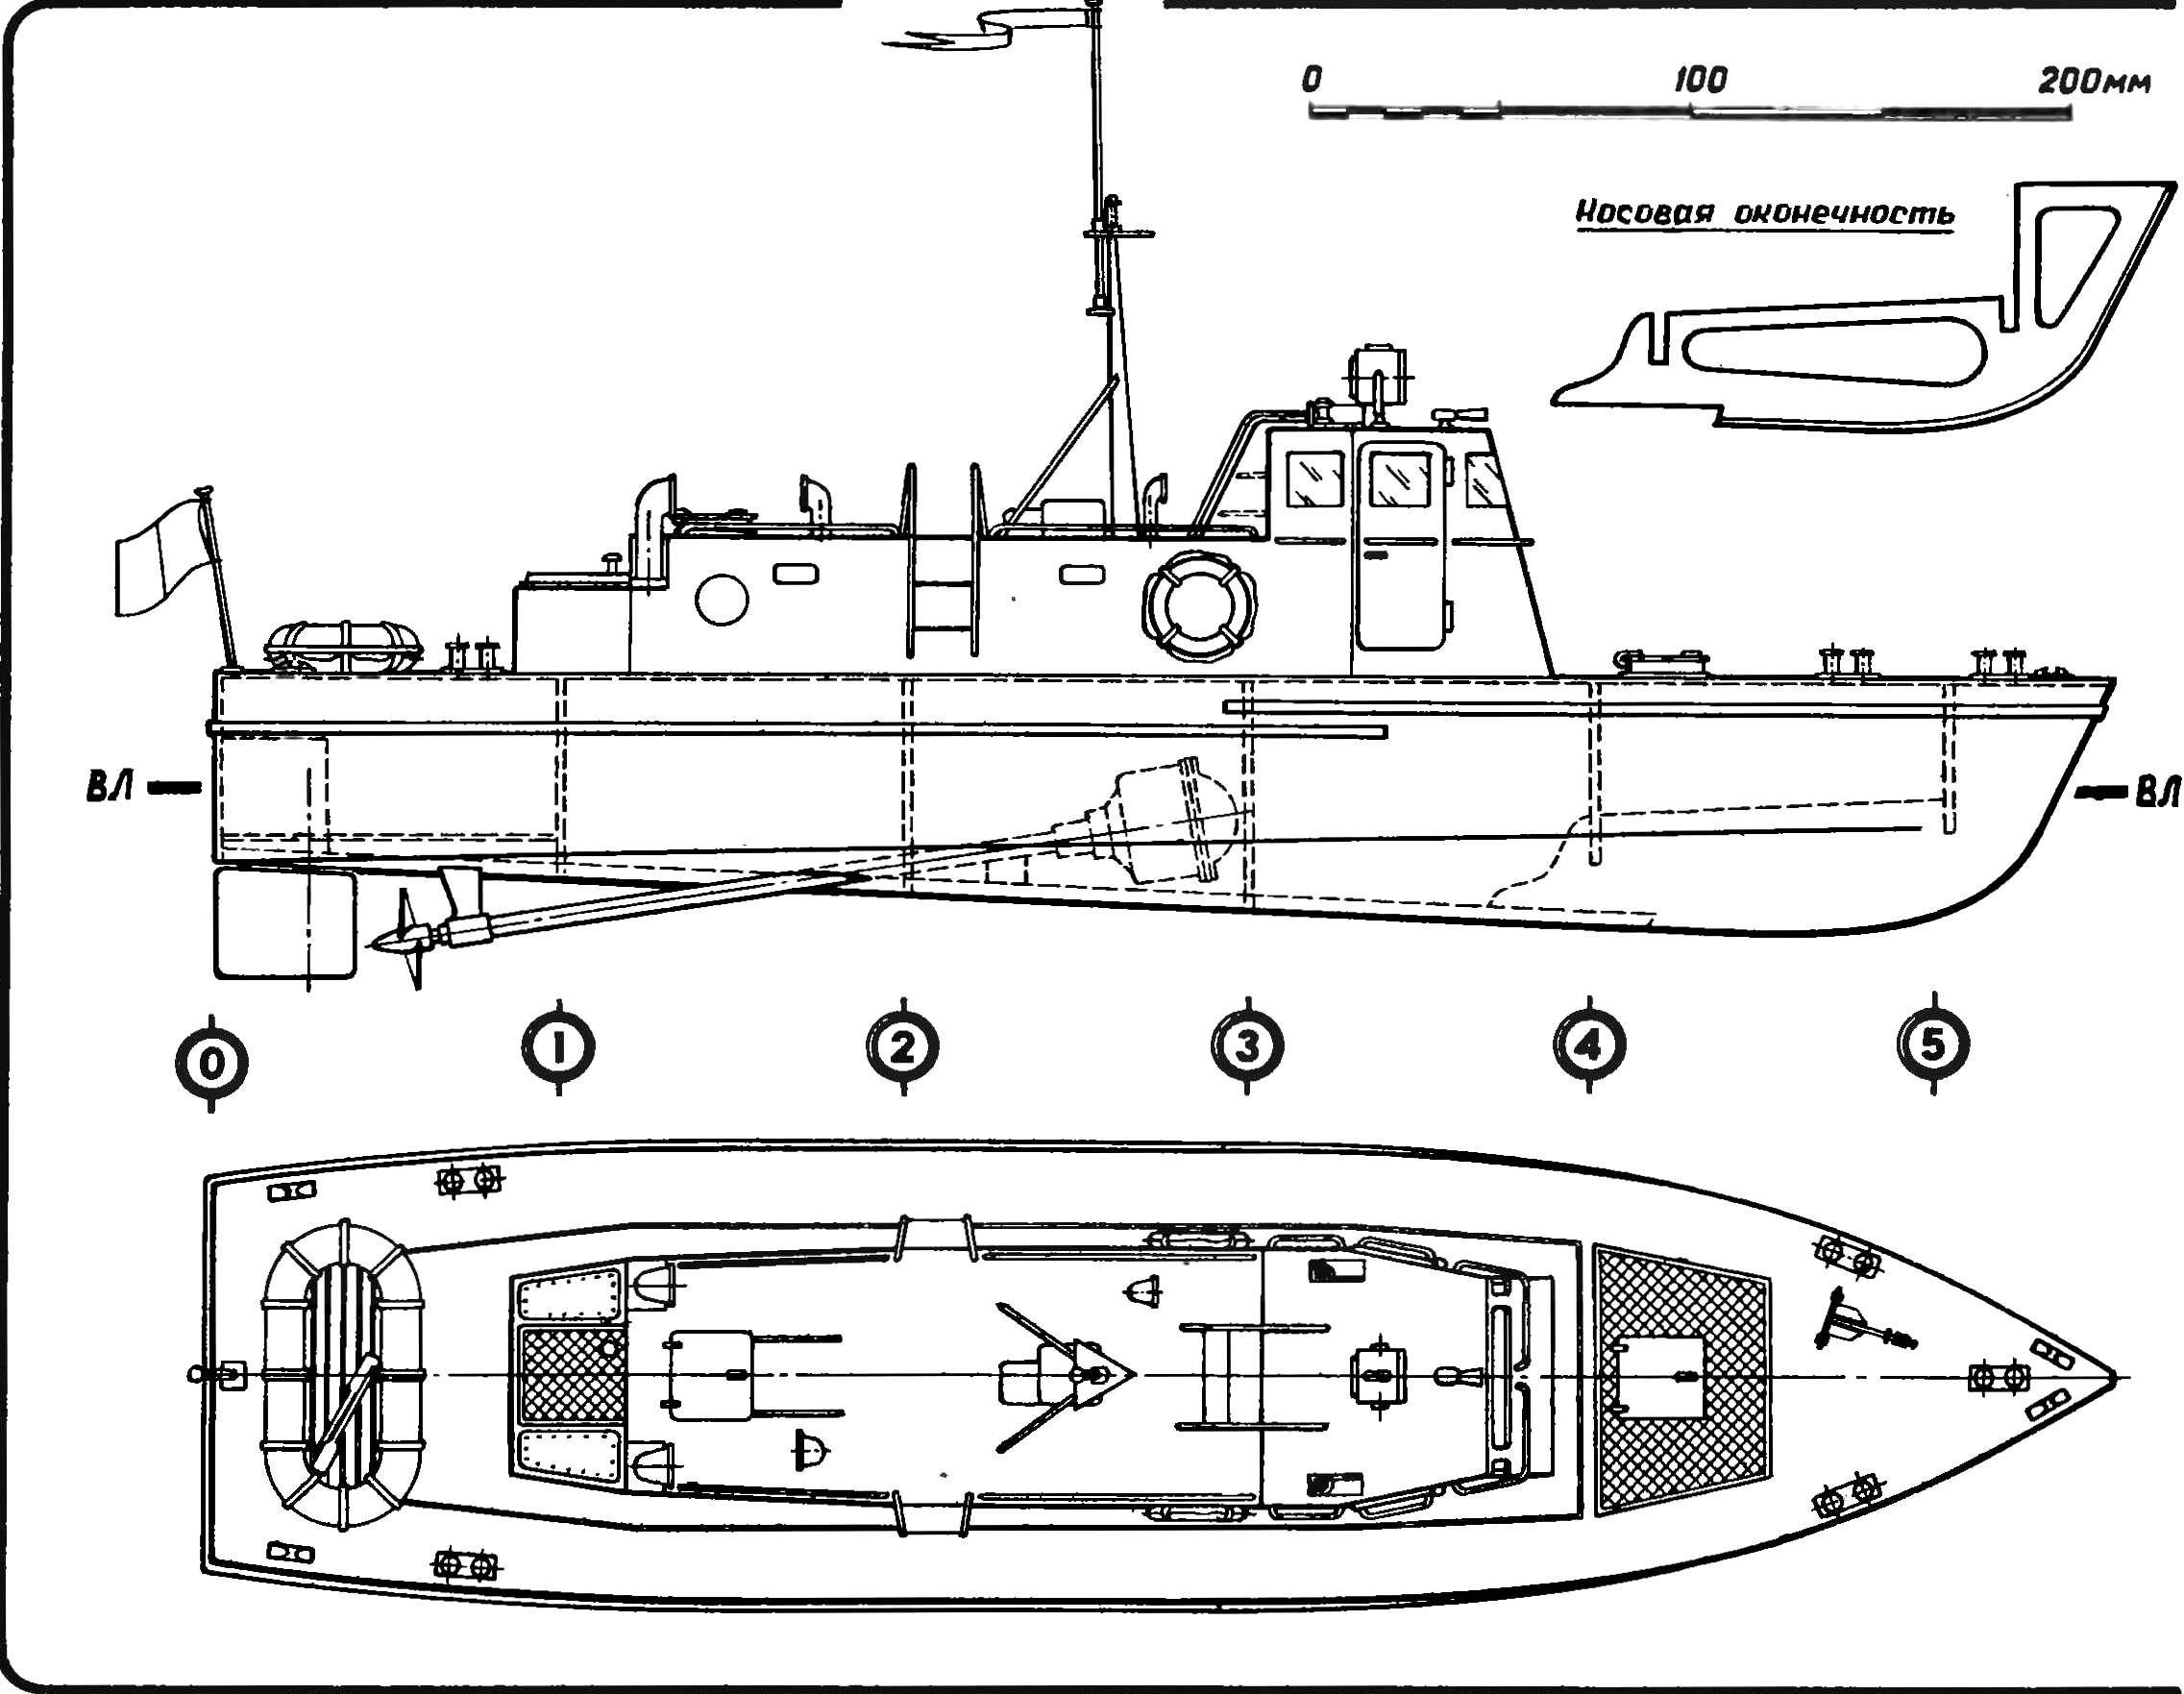 Рис. 1. Модель-копия катера спасательной службы.